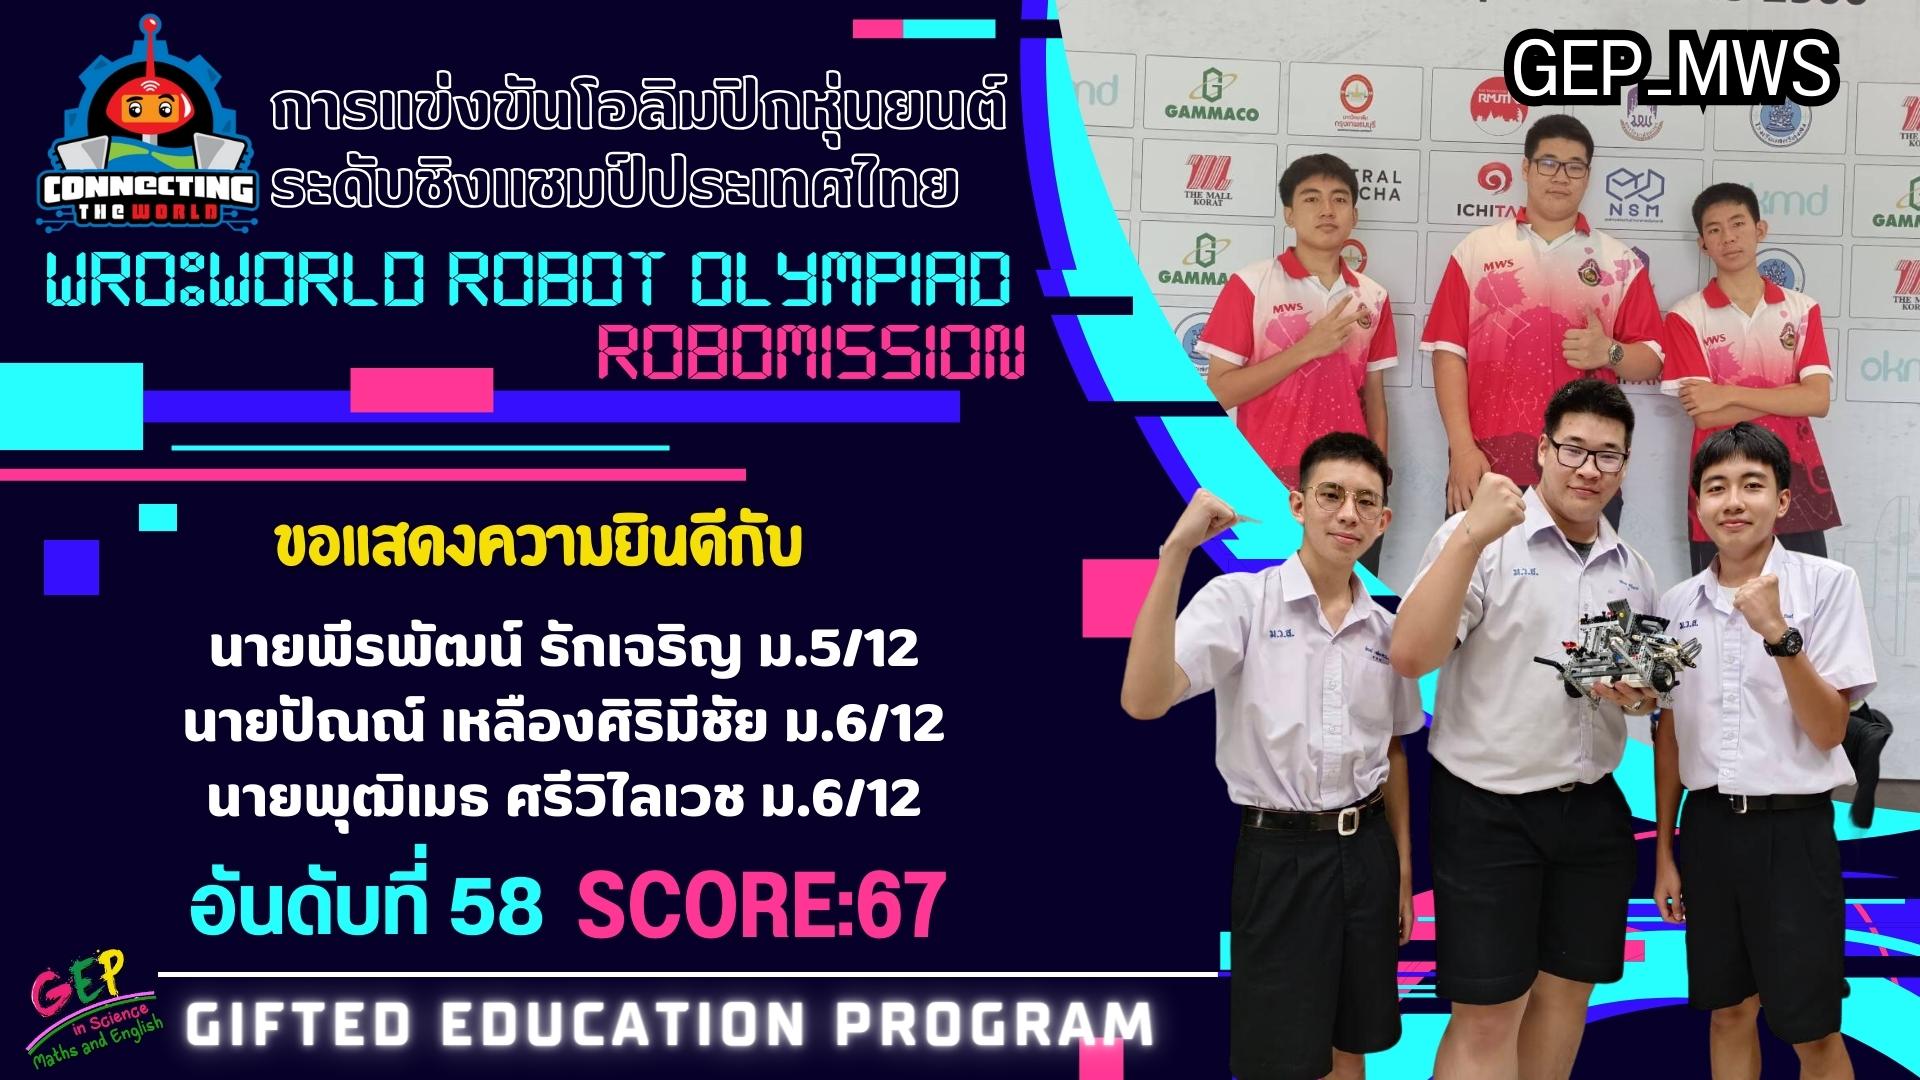 การแข่งขันโอลิมปิกหุ่นยนต์ ประเภทหุ่นยนต์อัตโนมัติ ระดับชิงแชมป์ประเทศไทย